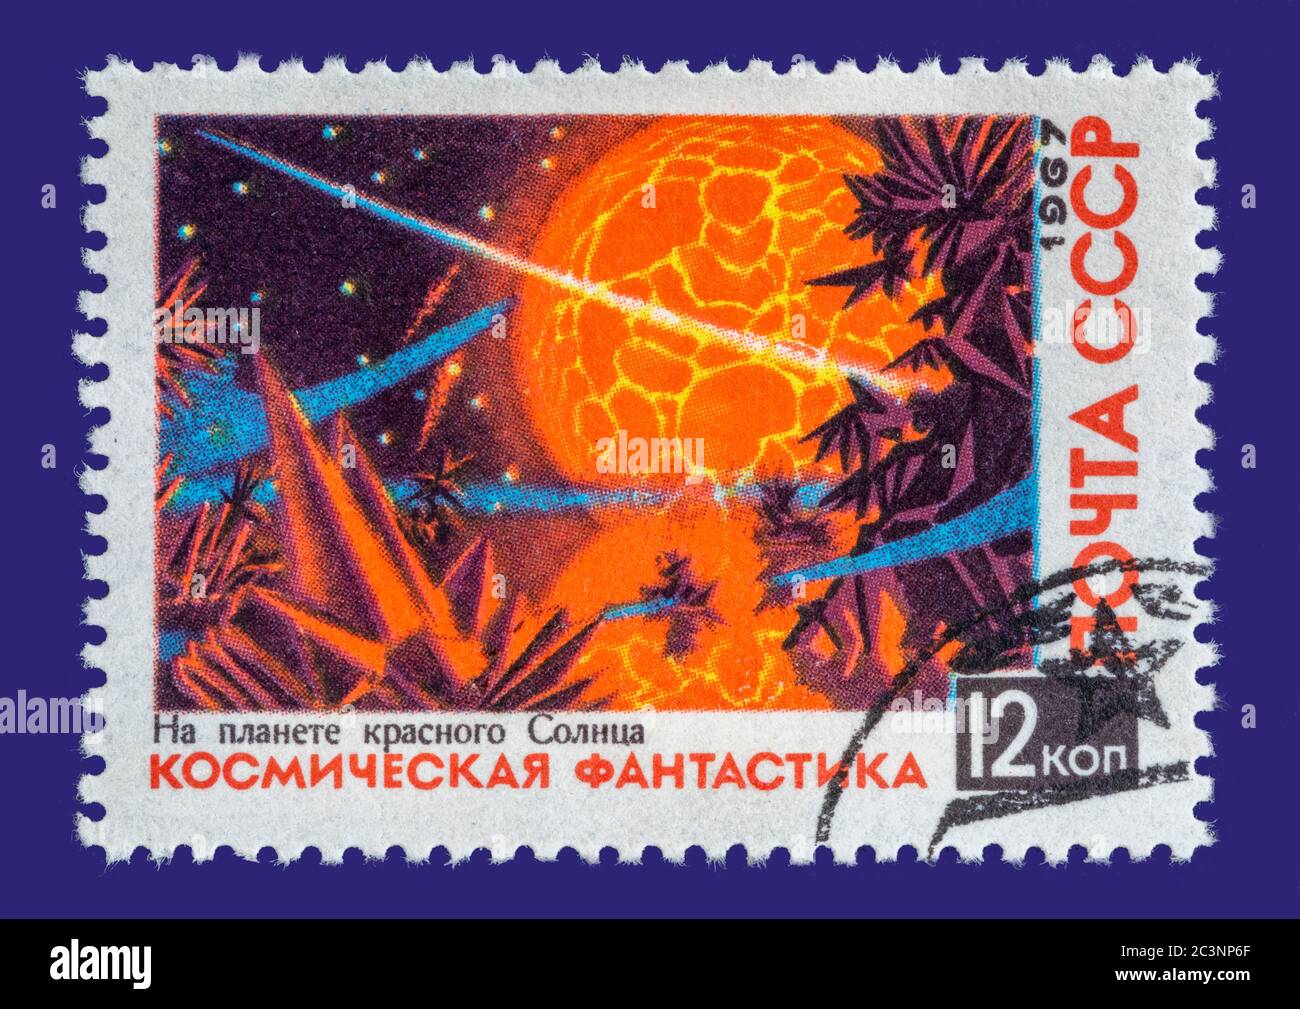 Vintage a annulé timbre-poste de l'Union soviétique vers 1967. Timbre coloré d'une scène spatiale. Sur un dossier bleu foncé. Banque D'Images